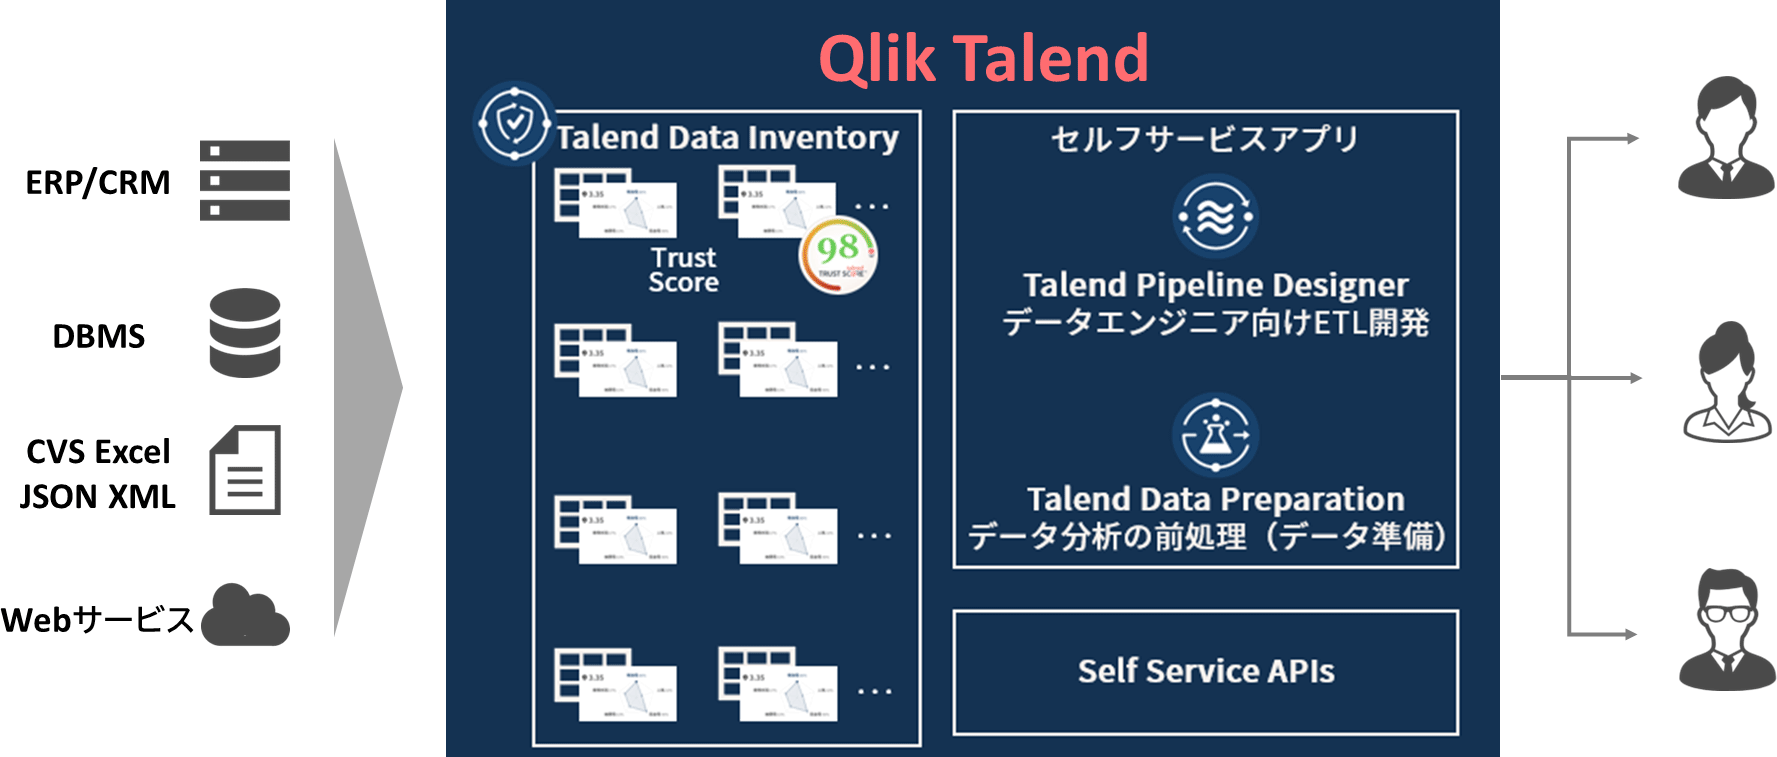 セルフサービス（Qlik Talend Data Inventory、Qlik Talend Pipline Designer、Data Prearation）